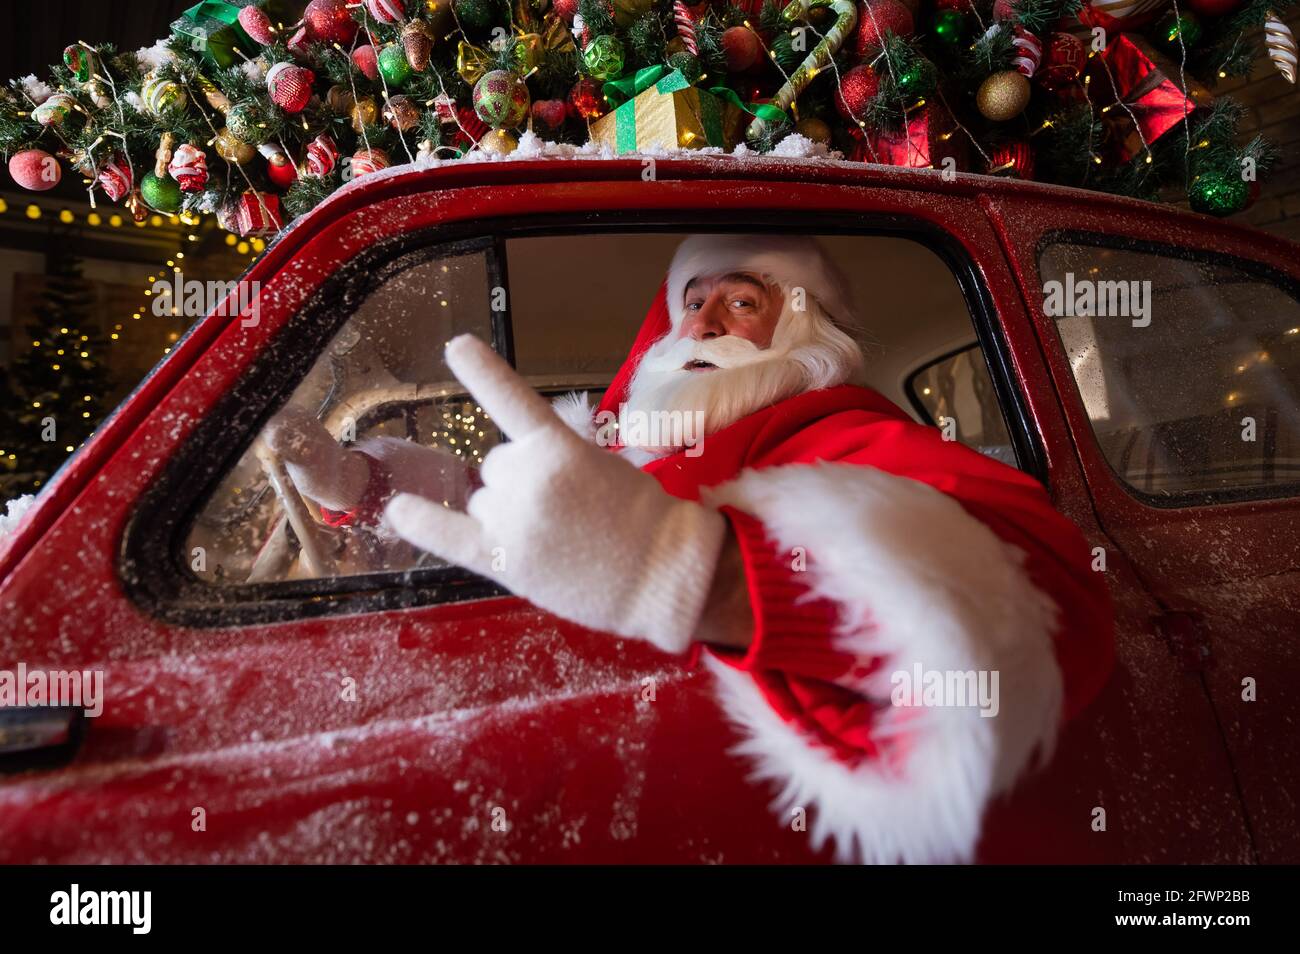 Porträt des weihnachtsmannes, der ein Auto mit einem beladen fährt